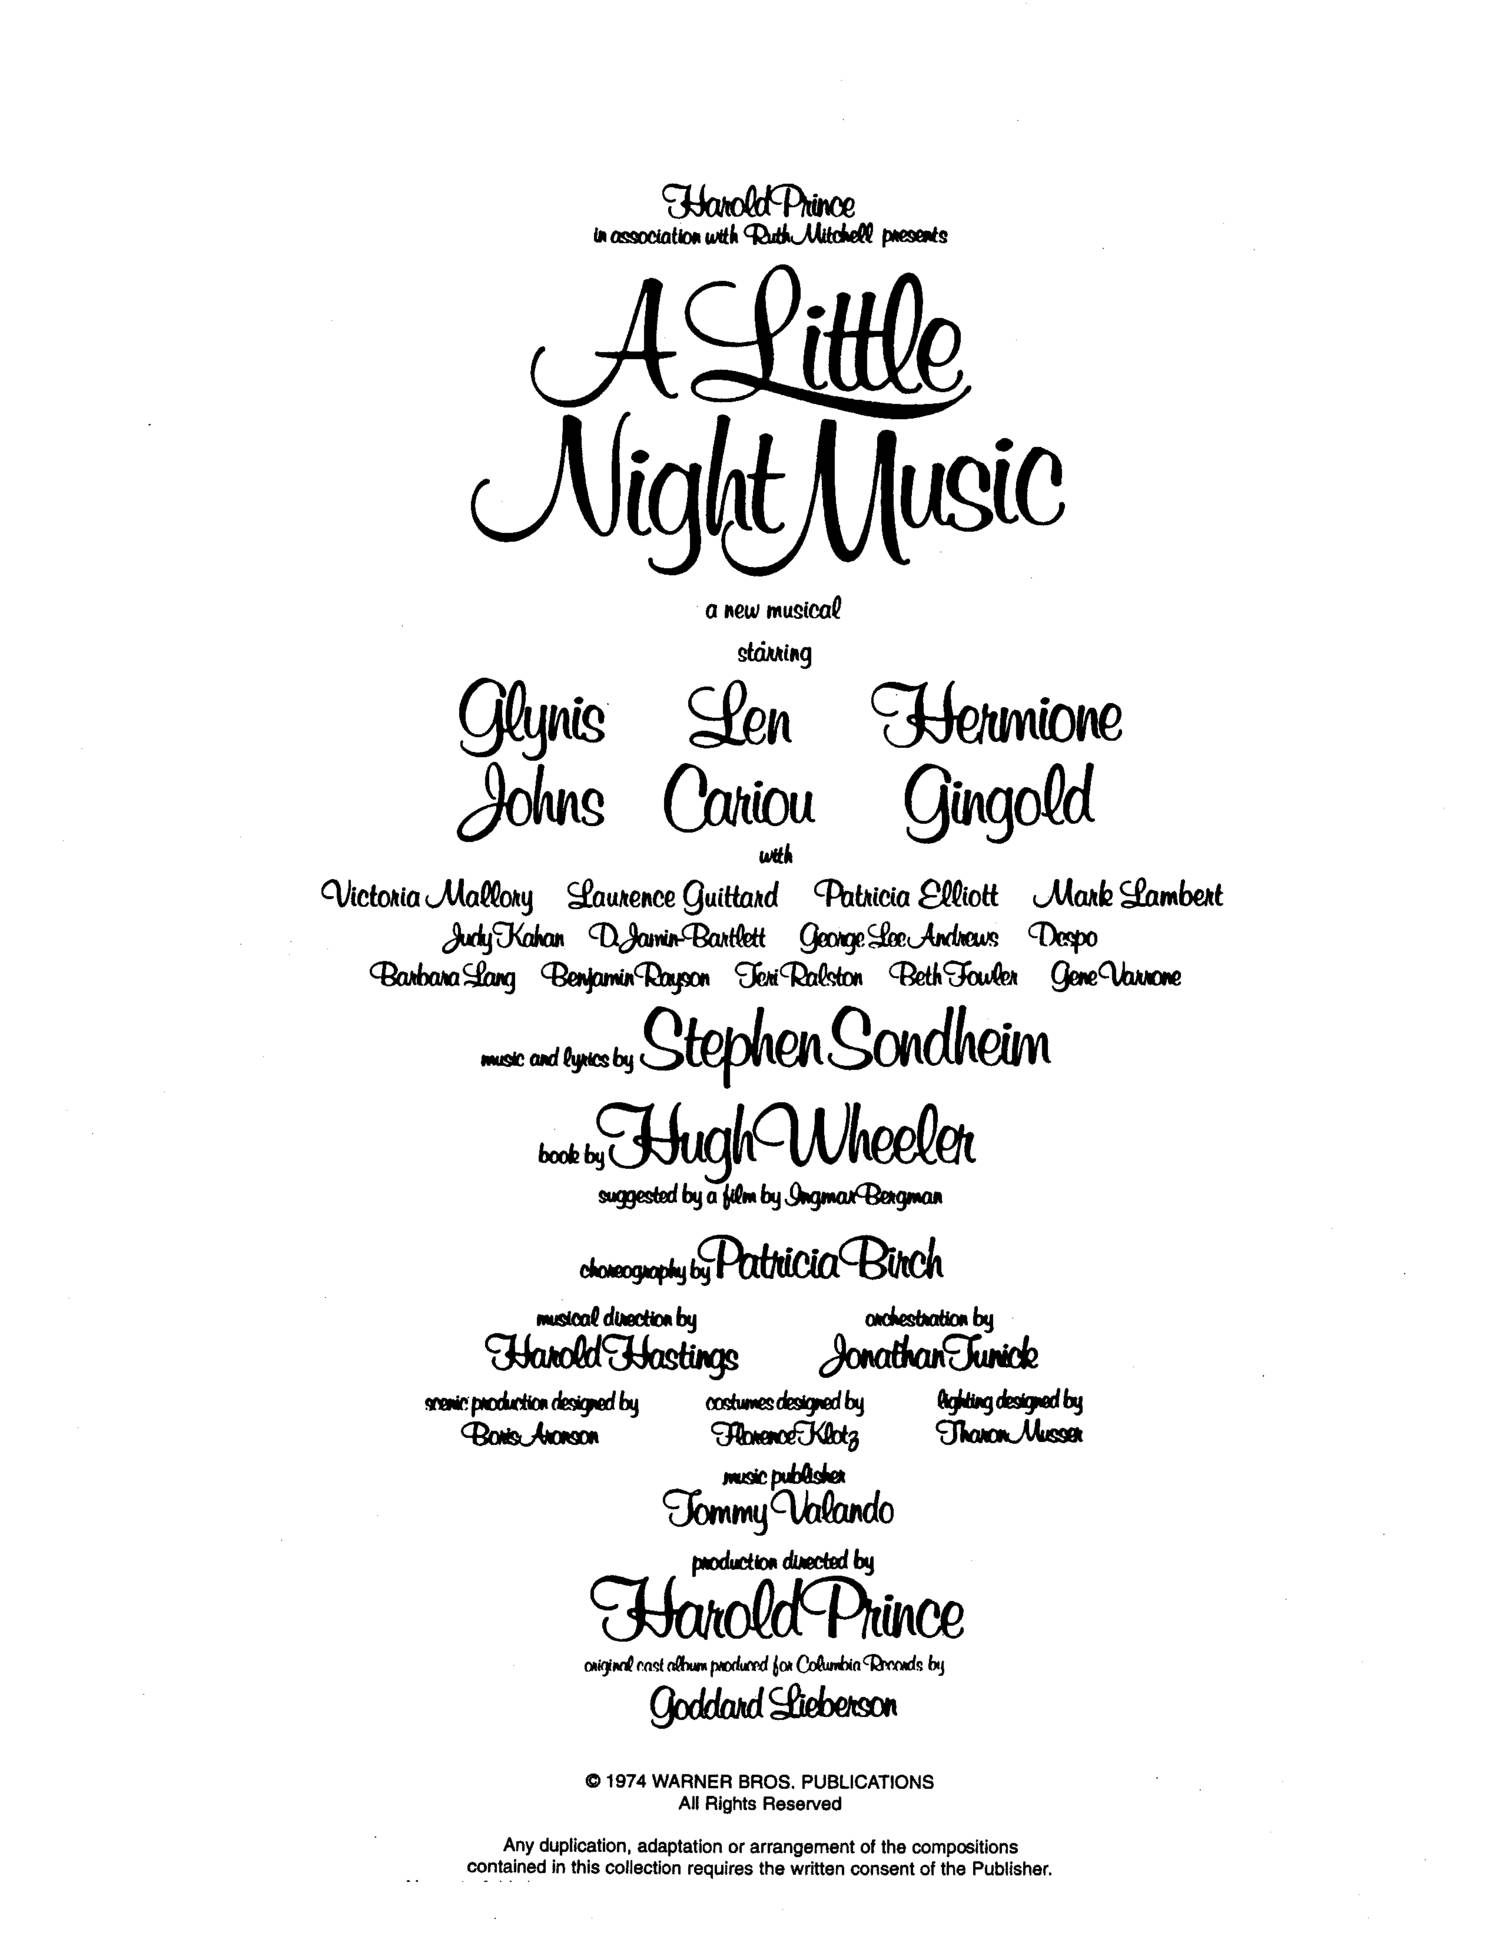 A little night music Sondheim sheet music Follies